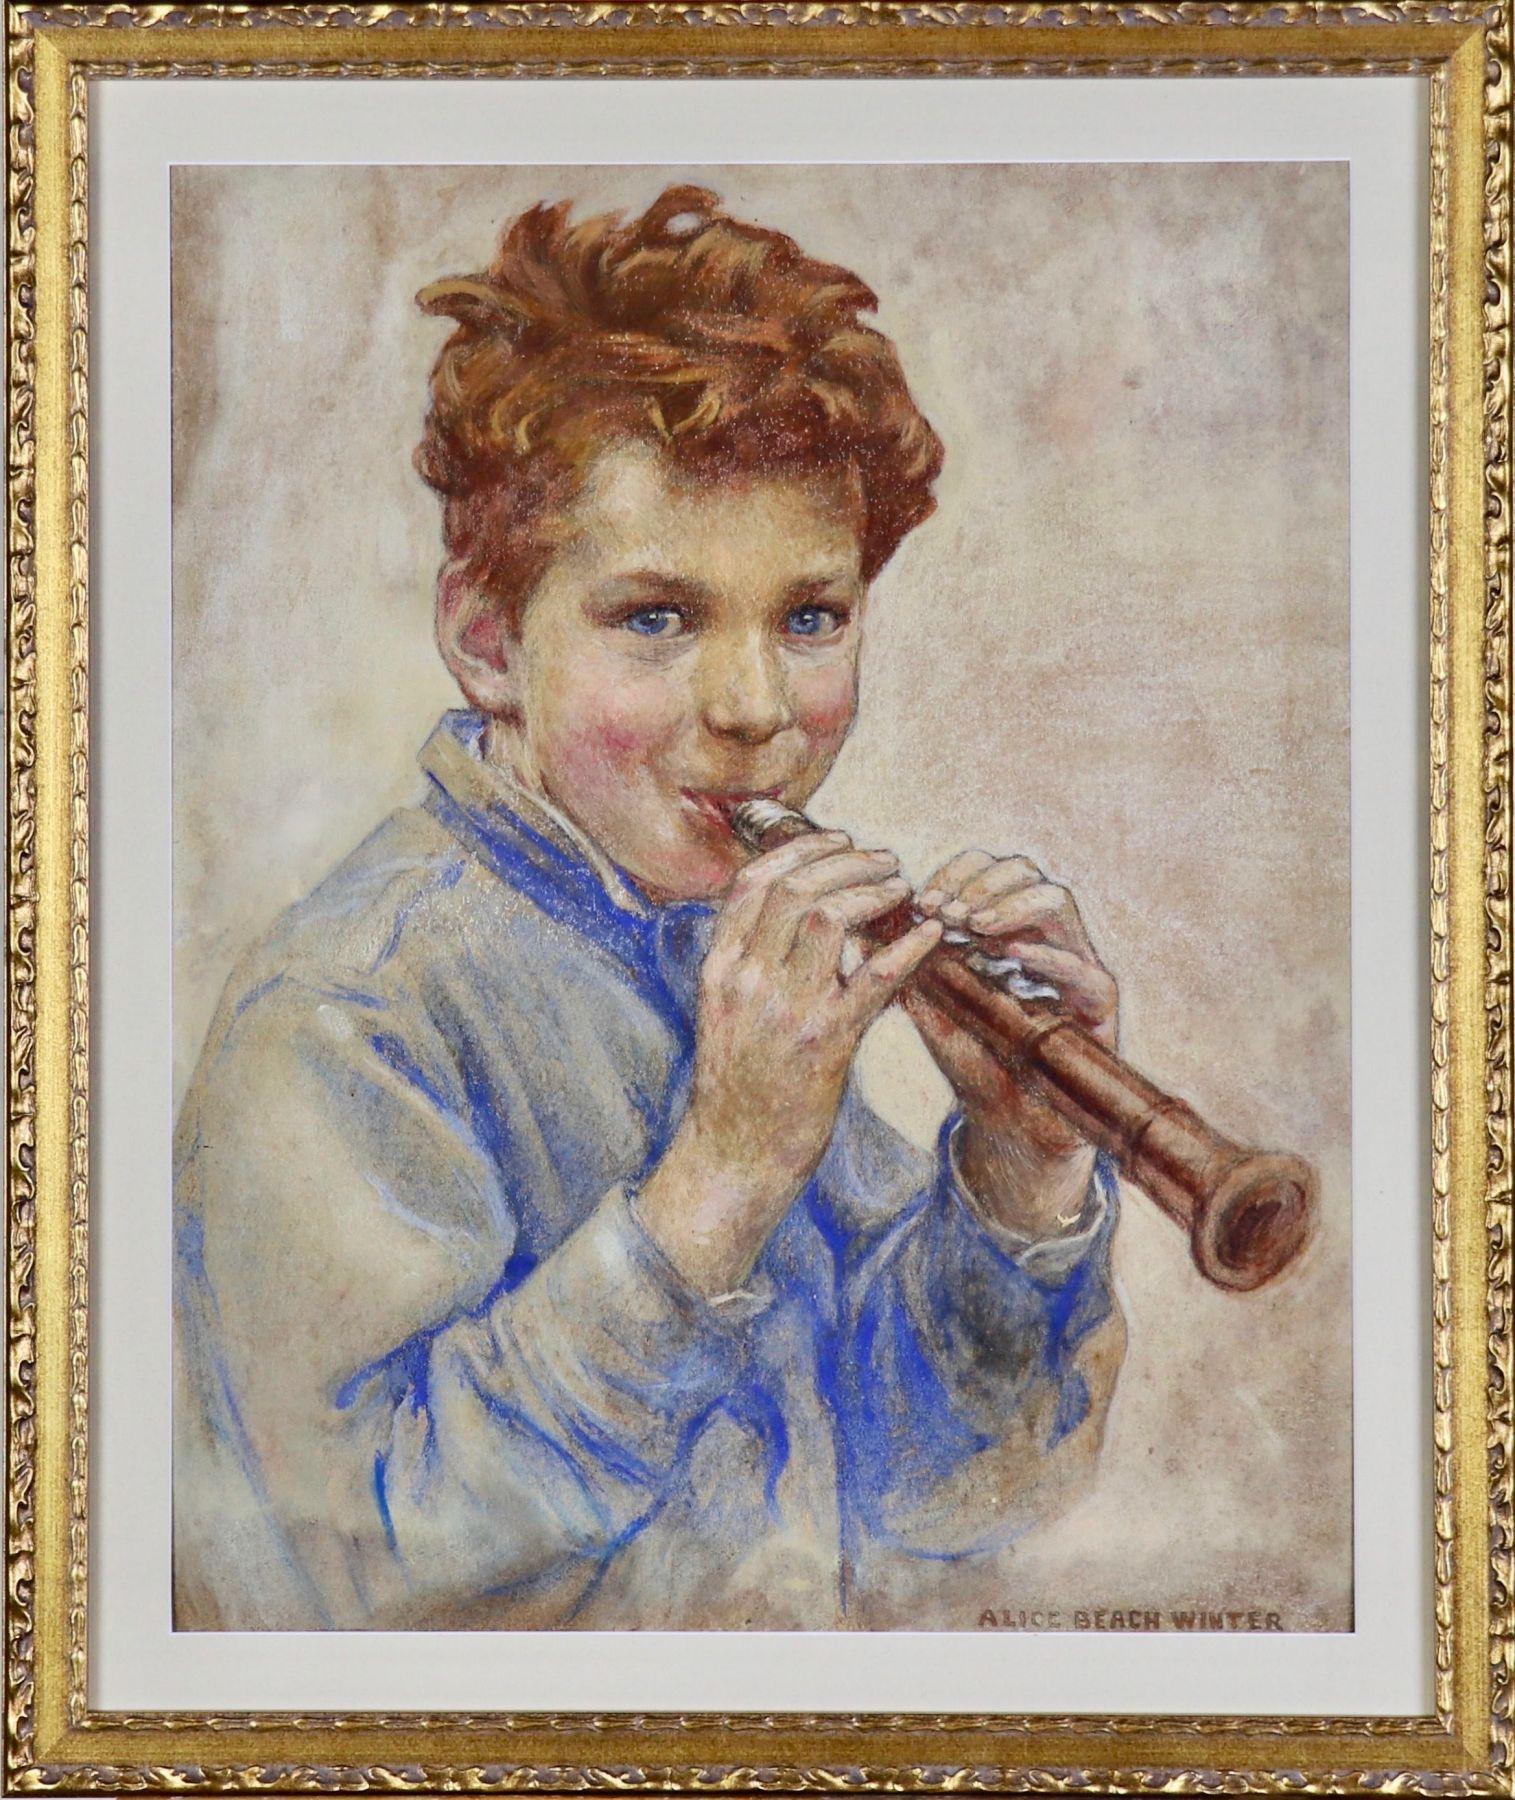 Boy with Clarinet, Titelseite des Magazins für Kinder, 1927 – Art von Alice Beach Winter